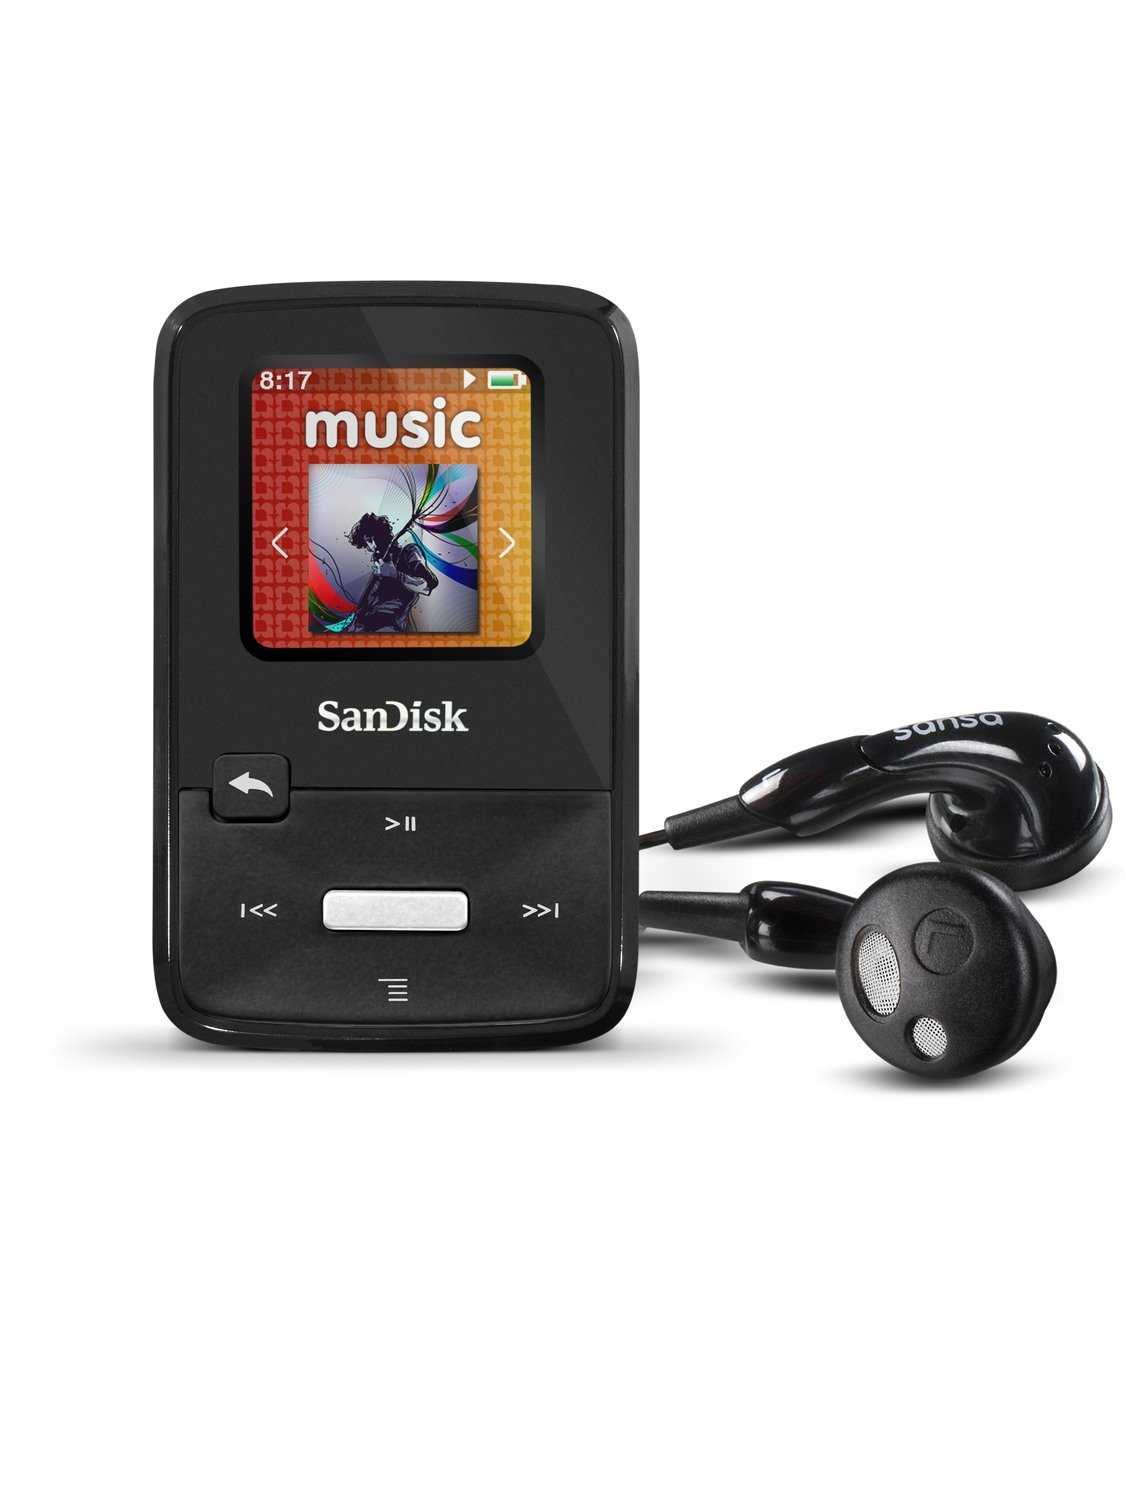 Sandisk sansa clip zip 4gb купить - санкт-петербург по акционной цене , отзывы и обзоры.